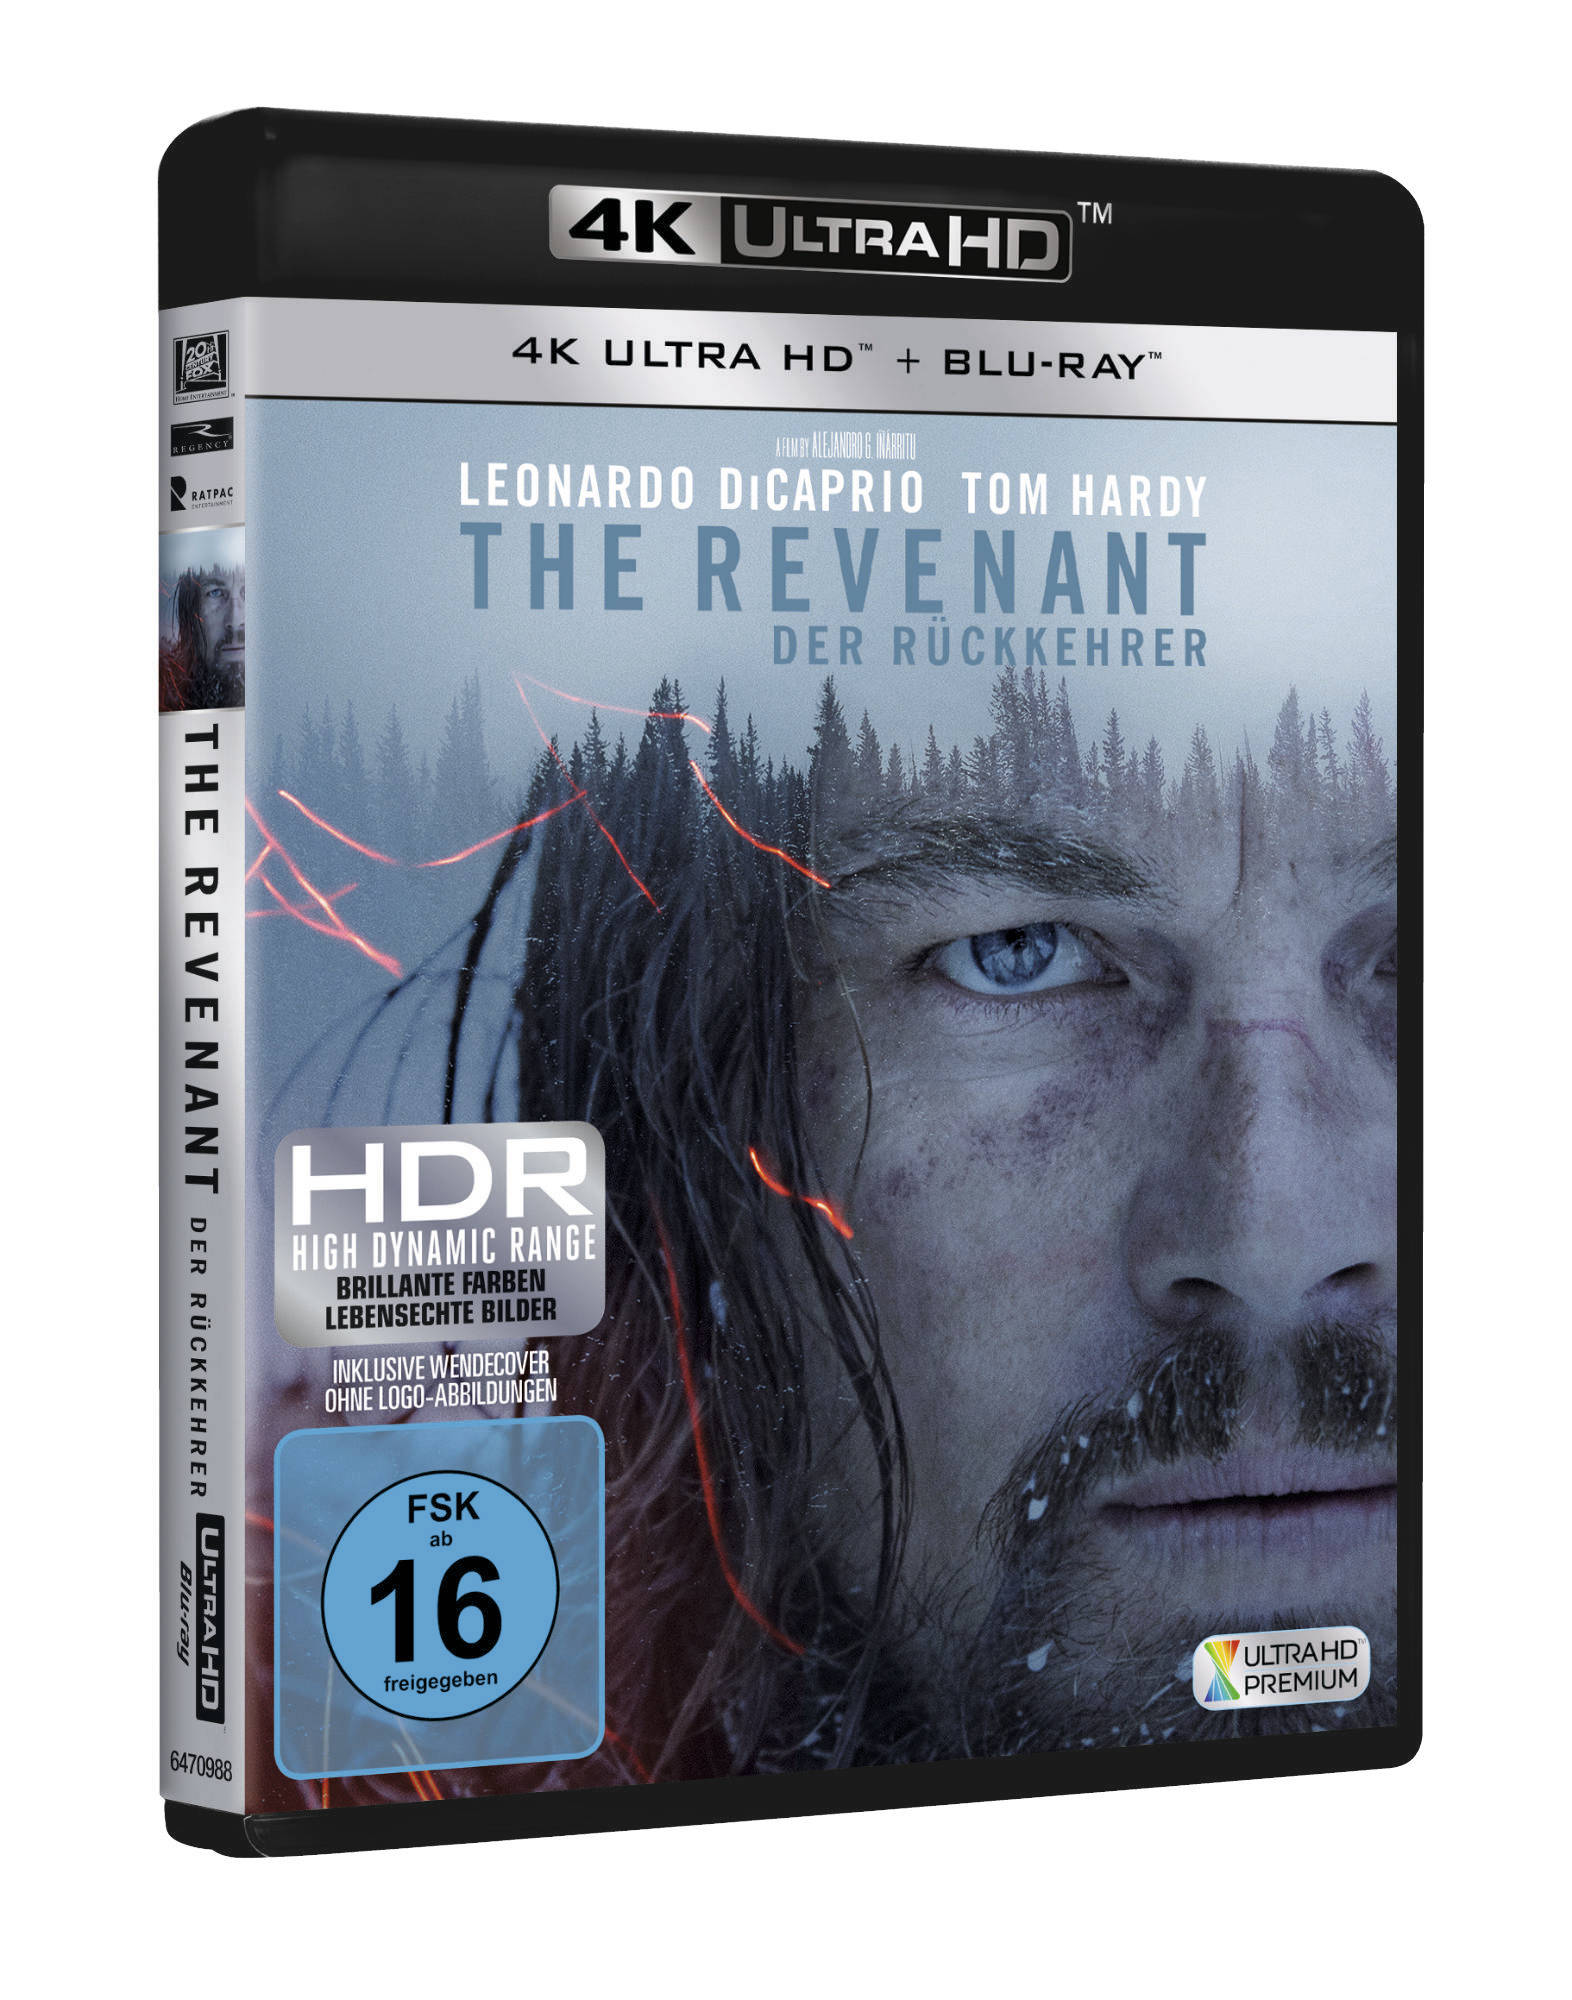 The Revenant Blu-ray Blu-ray Der - + Rückkehrer HD 4K Ultra